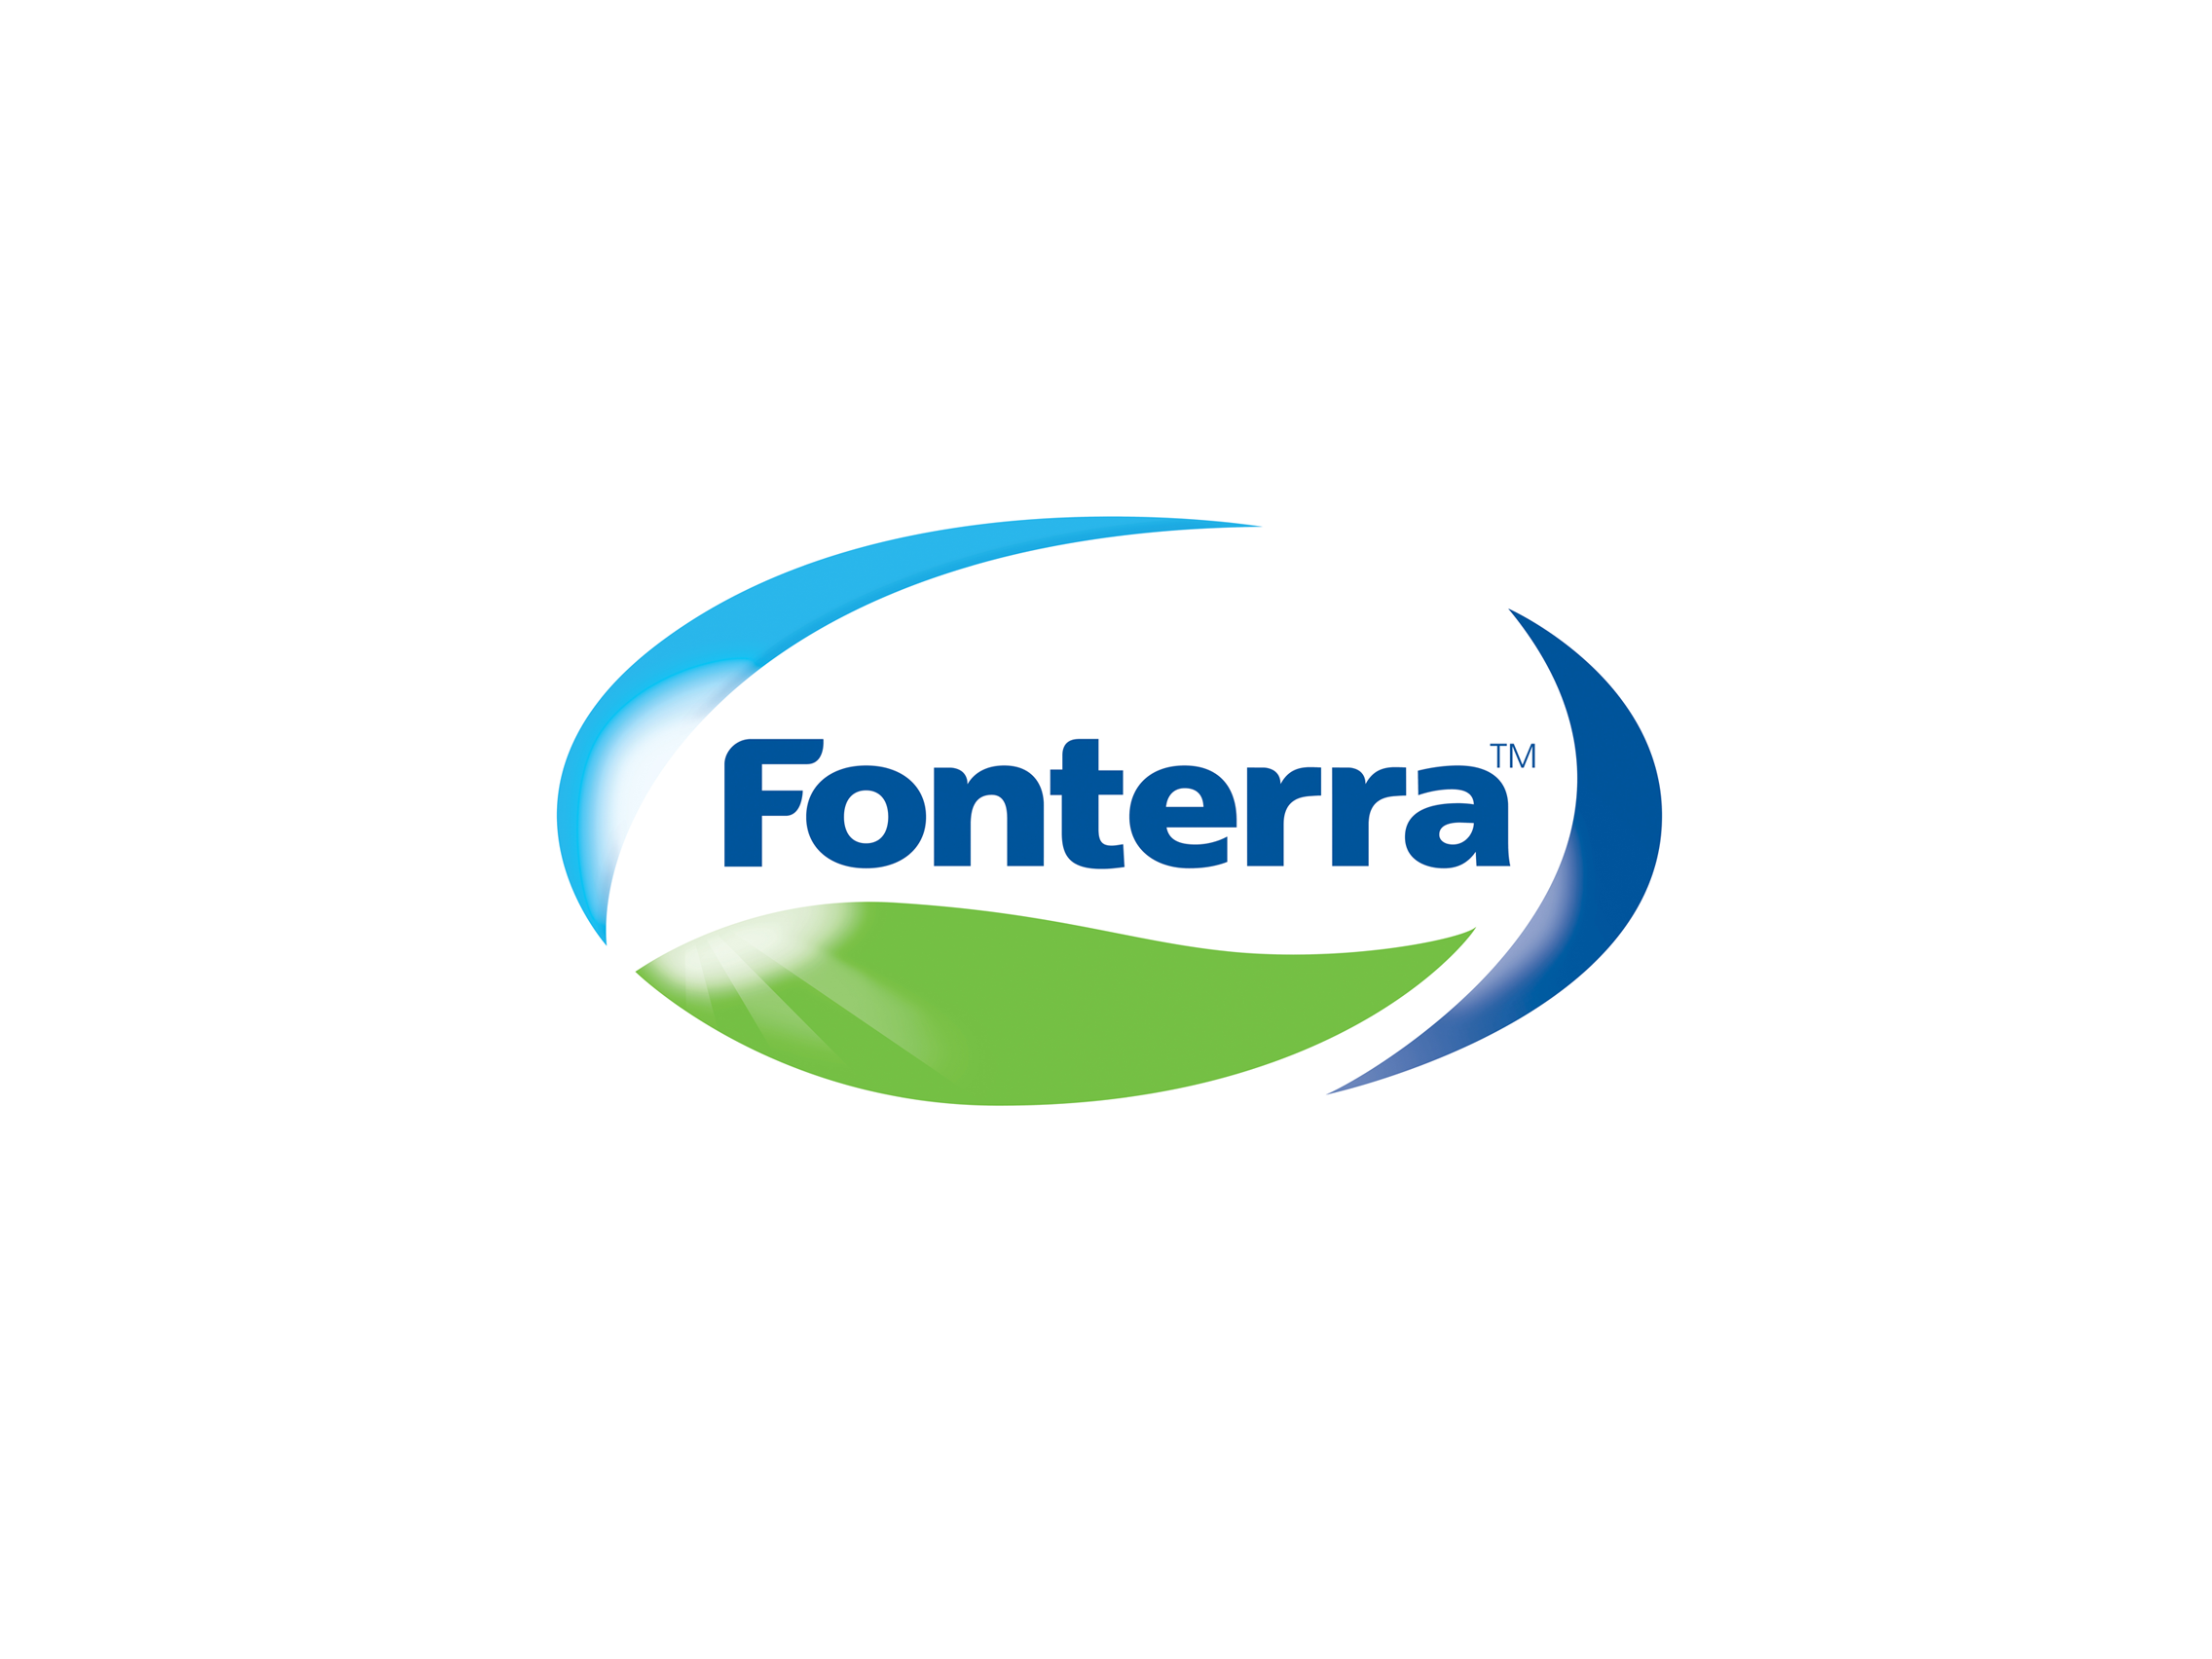 Logo Fonterra Png Hdpng.com 2272 - Fonterra, Transparent background PNG HD thumbnail